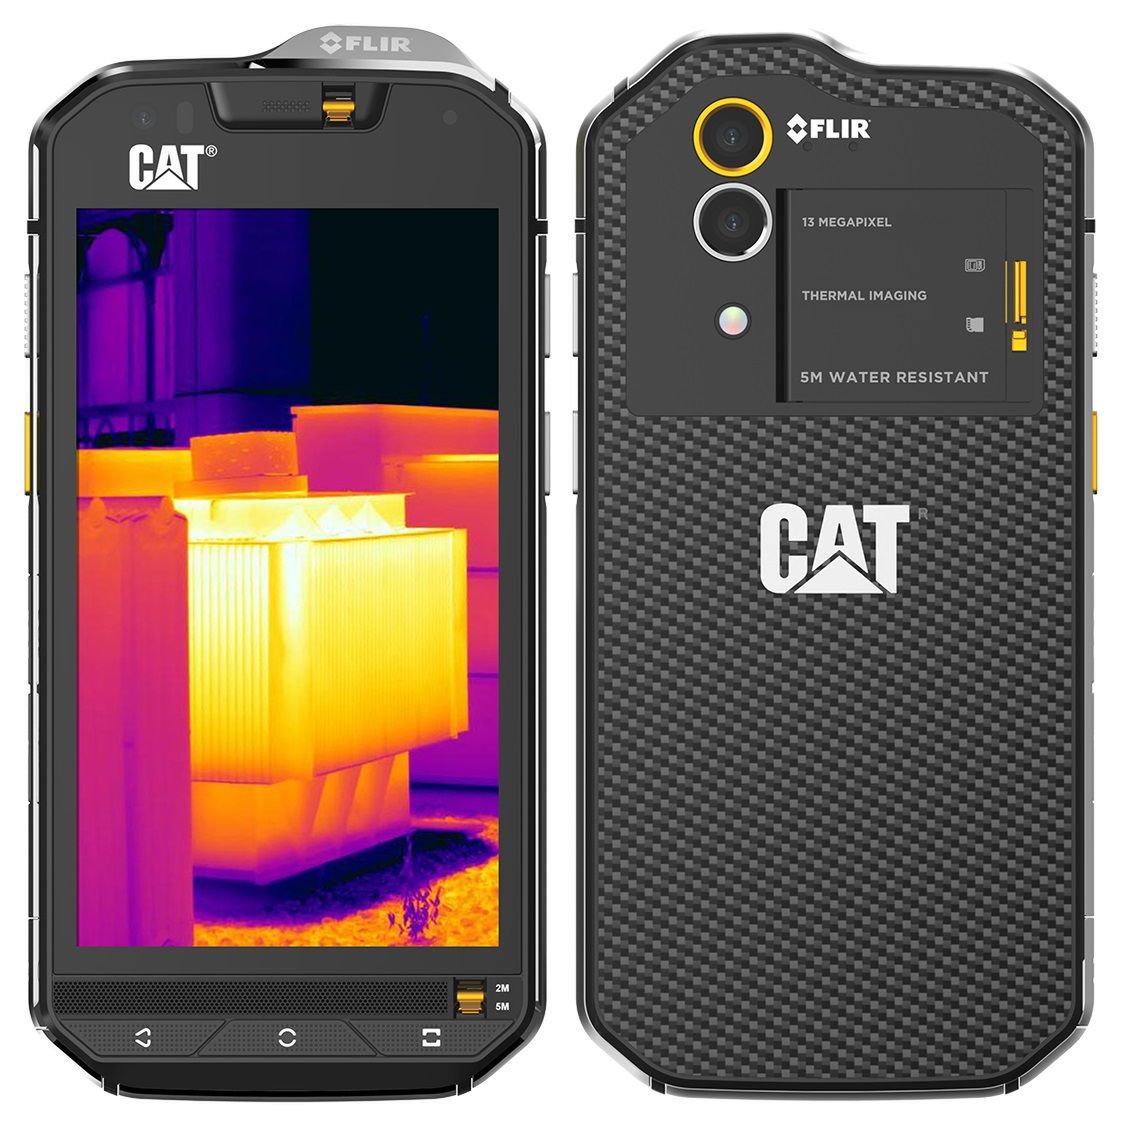 CAT S60 to pierwszy smartfon z kamerą termowizyjną